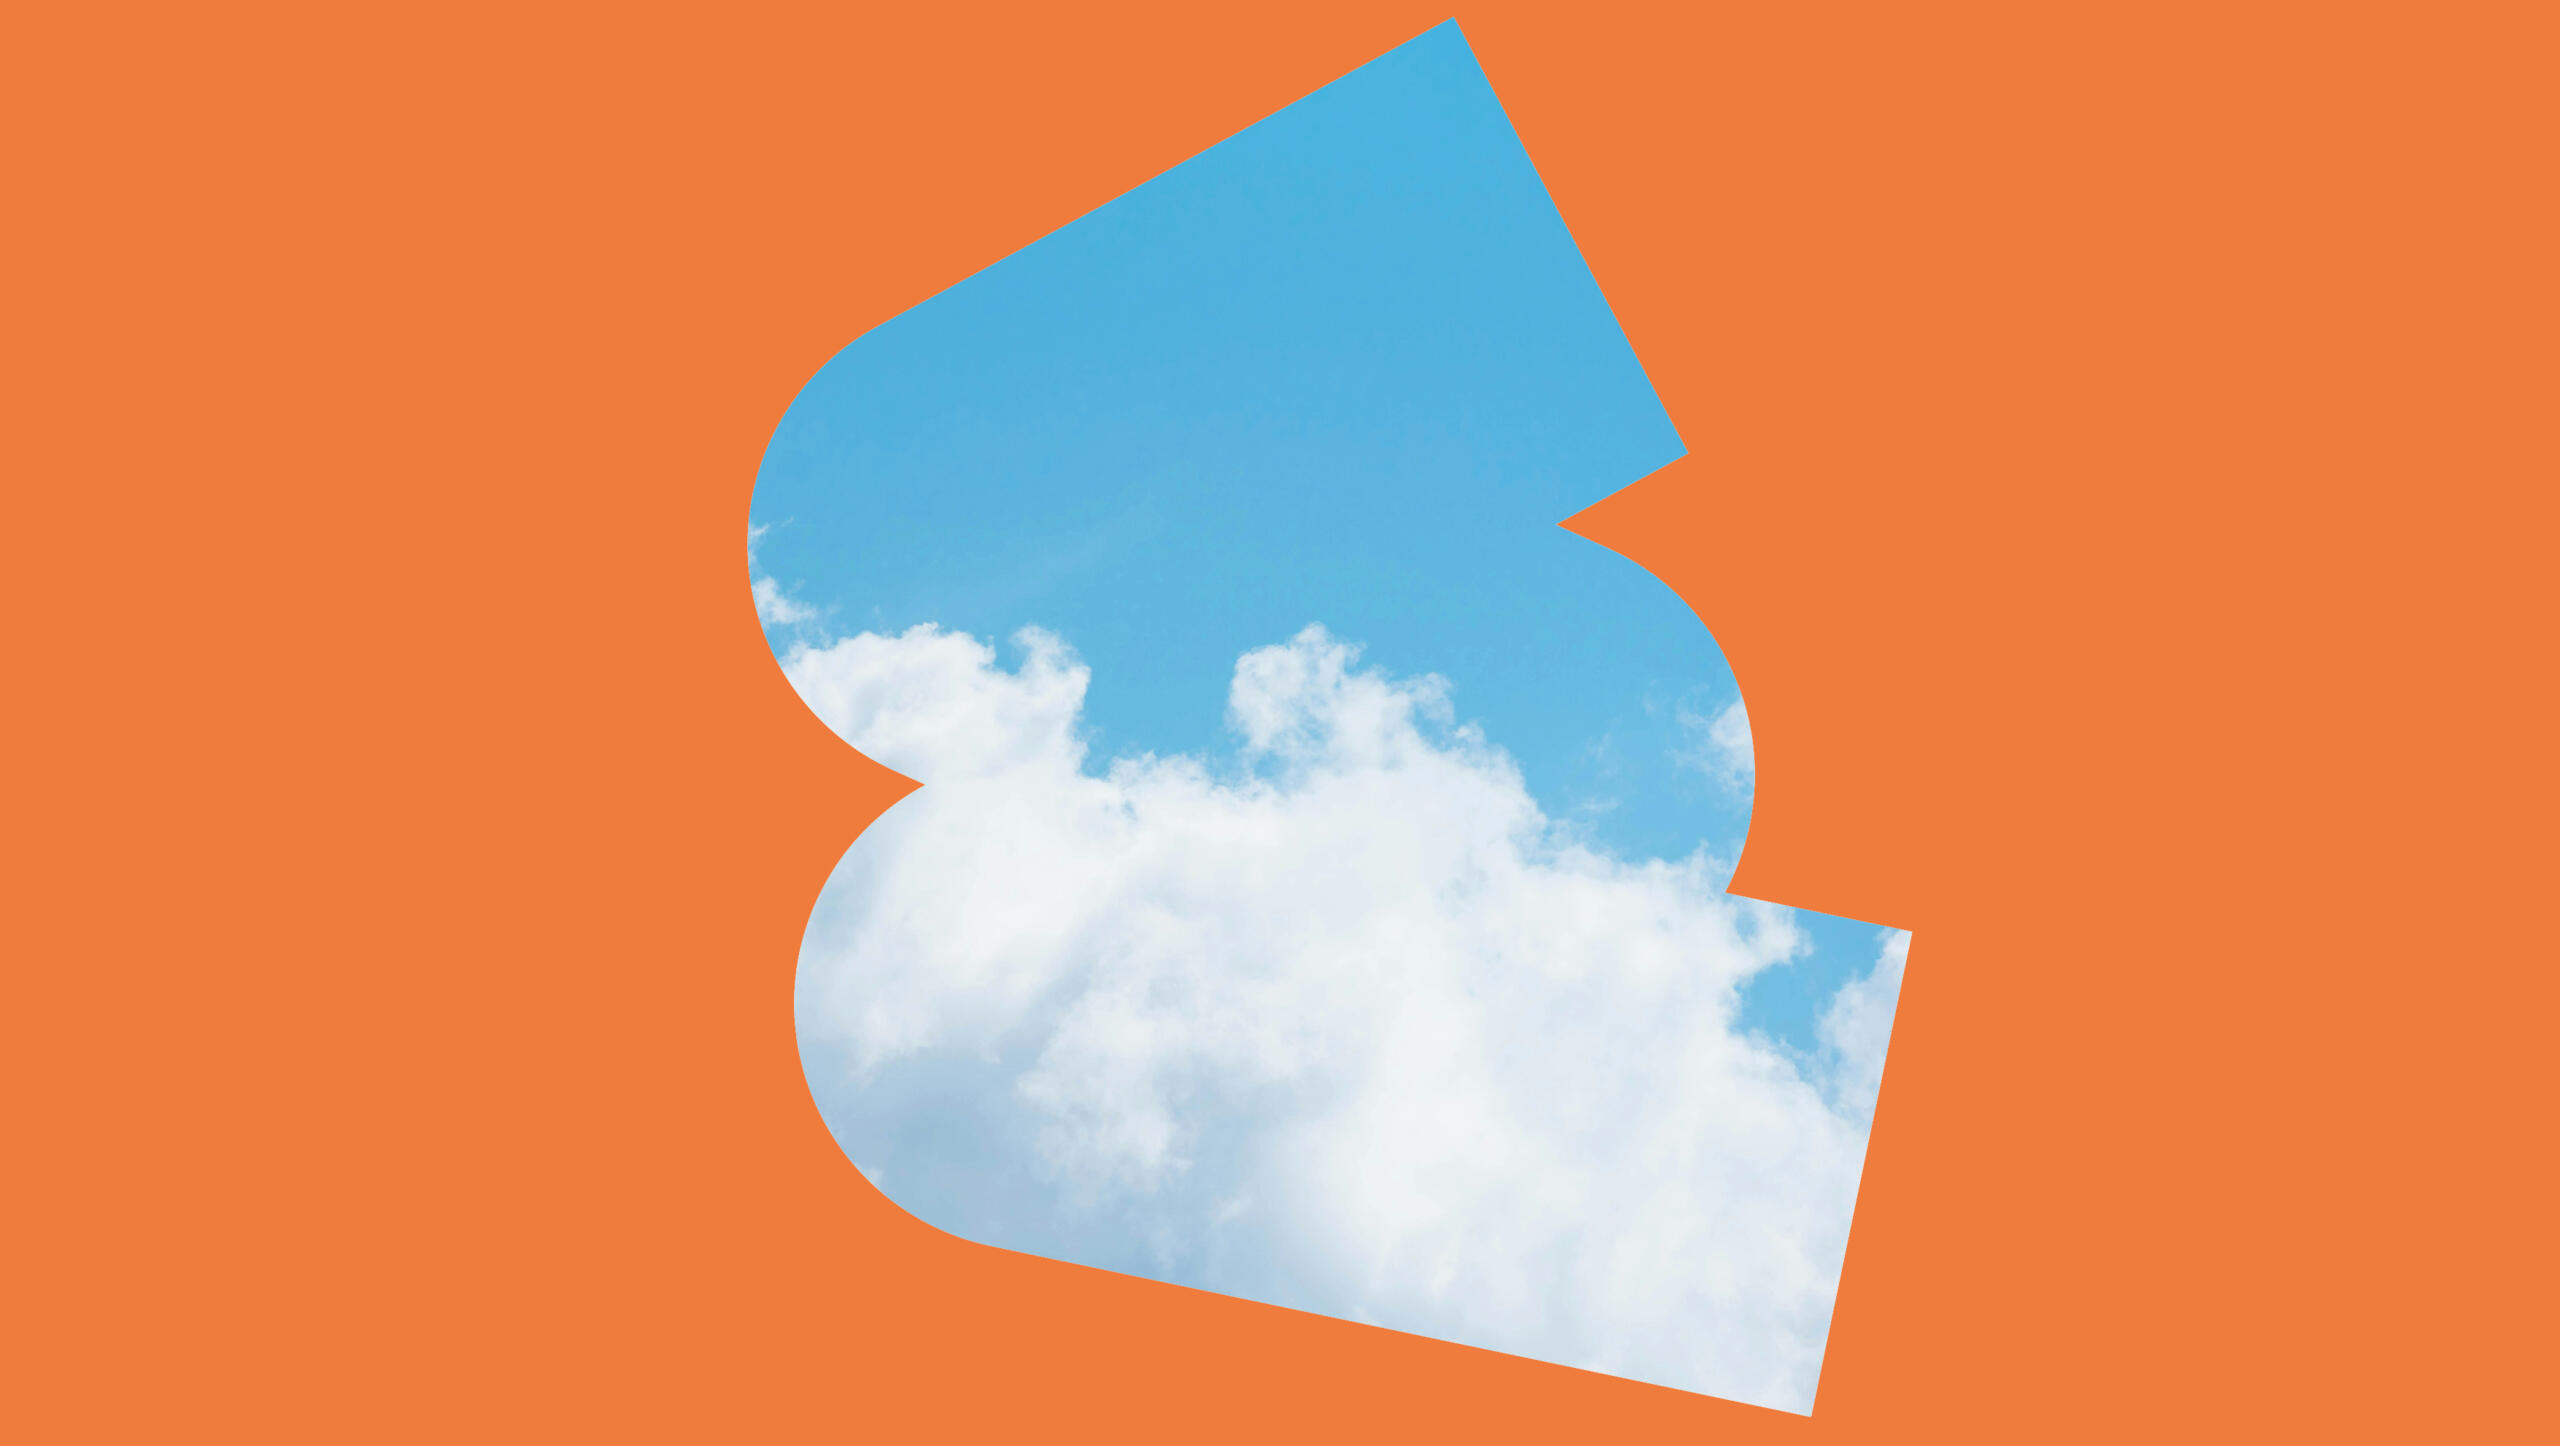 Eine orangene Fläche, in der Mitte gibt es eine ausgesparte Form, hinter der man einen blauen Himmel mit Wolken sieht.